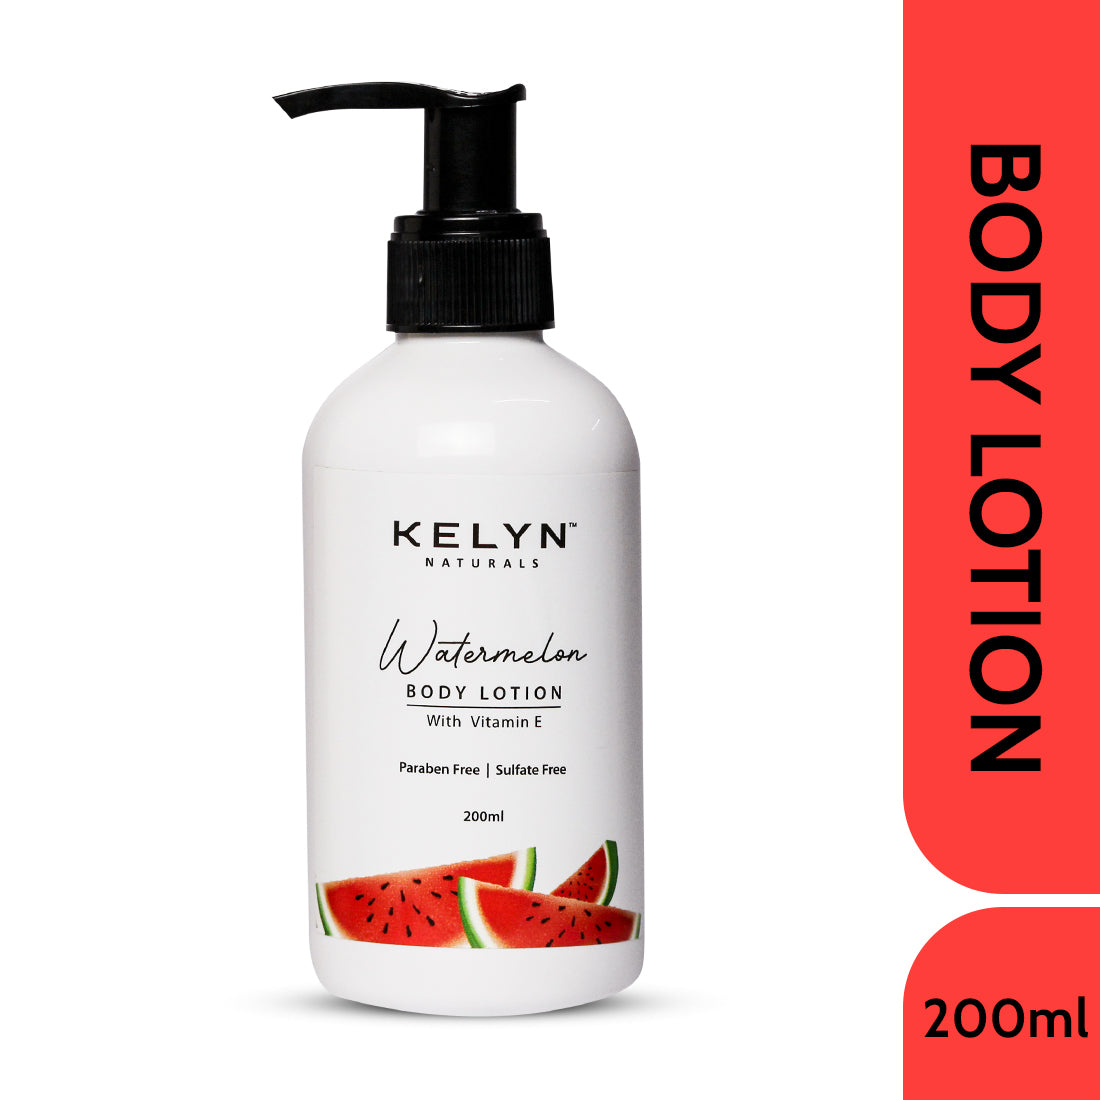 Watermelon Body Lotion with Vitamin E – 200ml